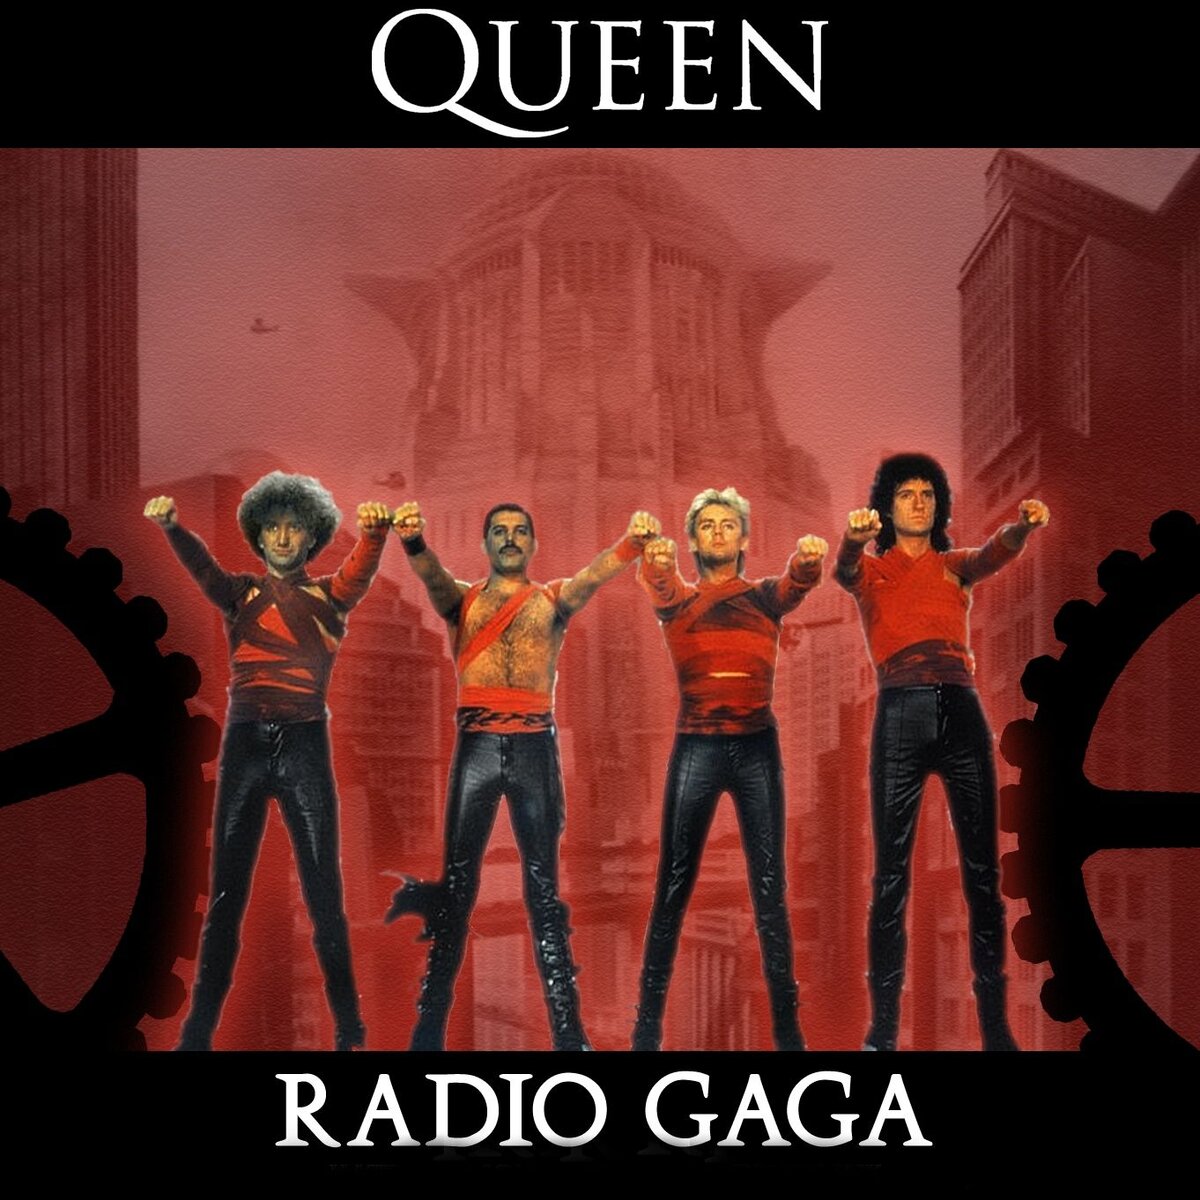 Клип песни радио. Queen - Radio ga ga (1984). Квин радио Гага. Фредди Меркьюри Radio Gaga. Queen Radio Gaga обложка.